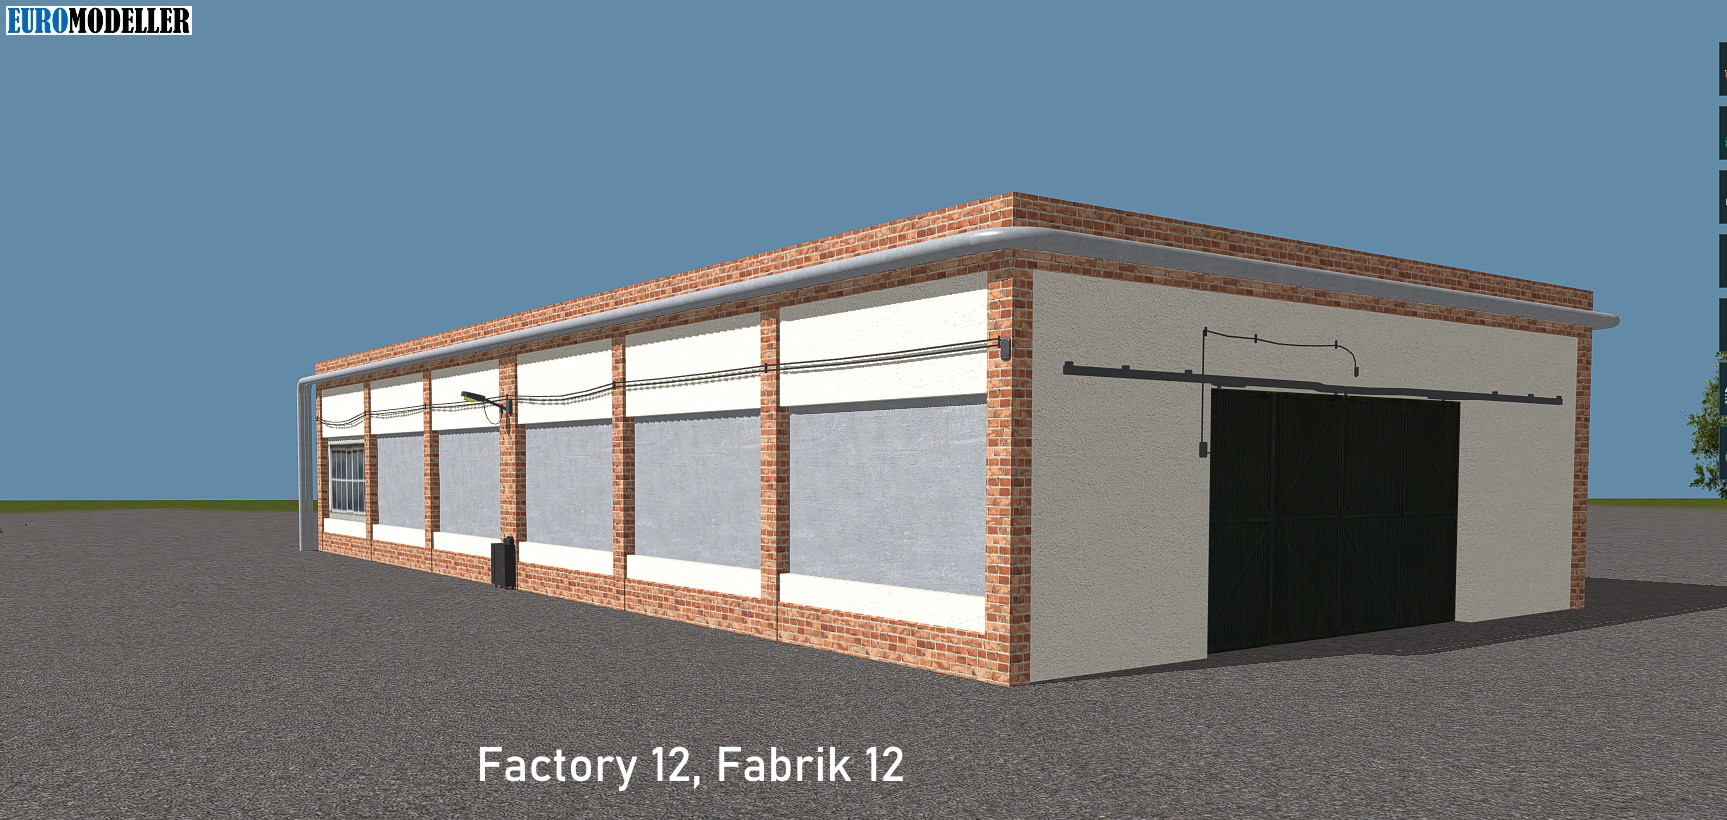 Factory 12, Fabrik 12